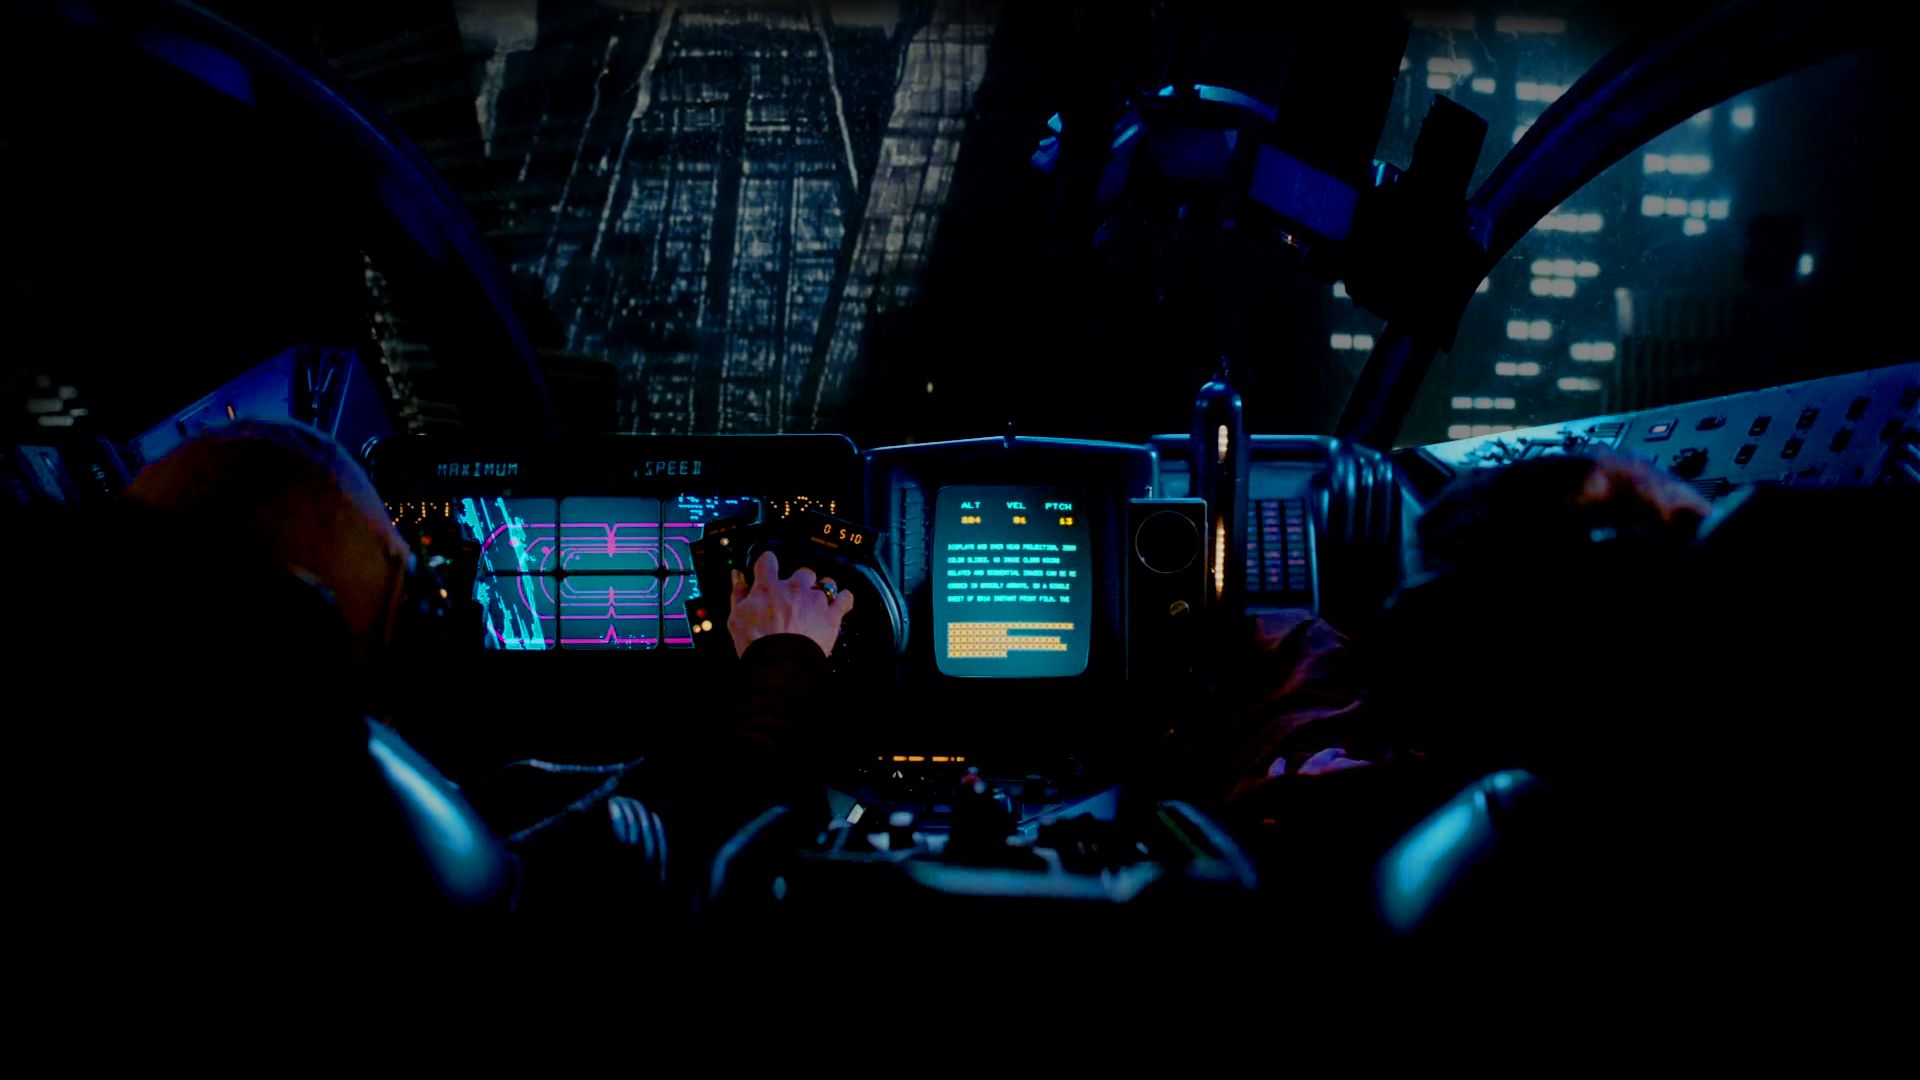 Fondos de Pantalla de Blade Runner gratuitos - Luke Dowding - en la web